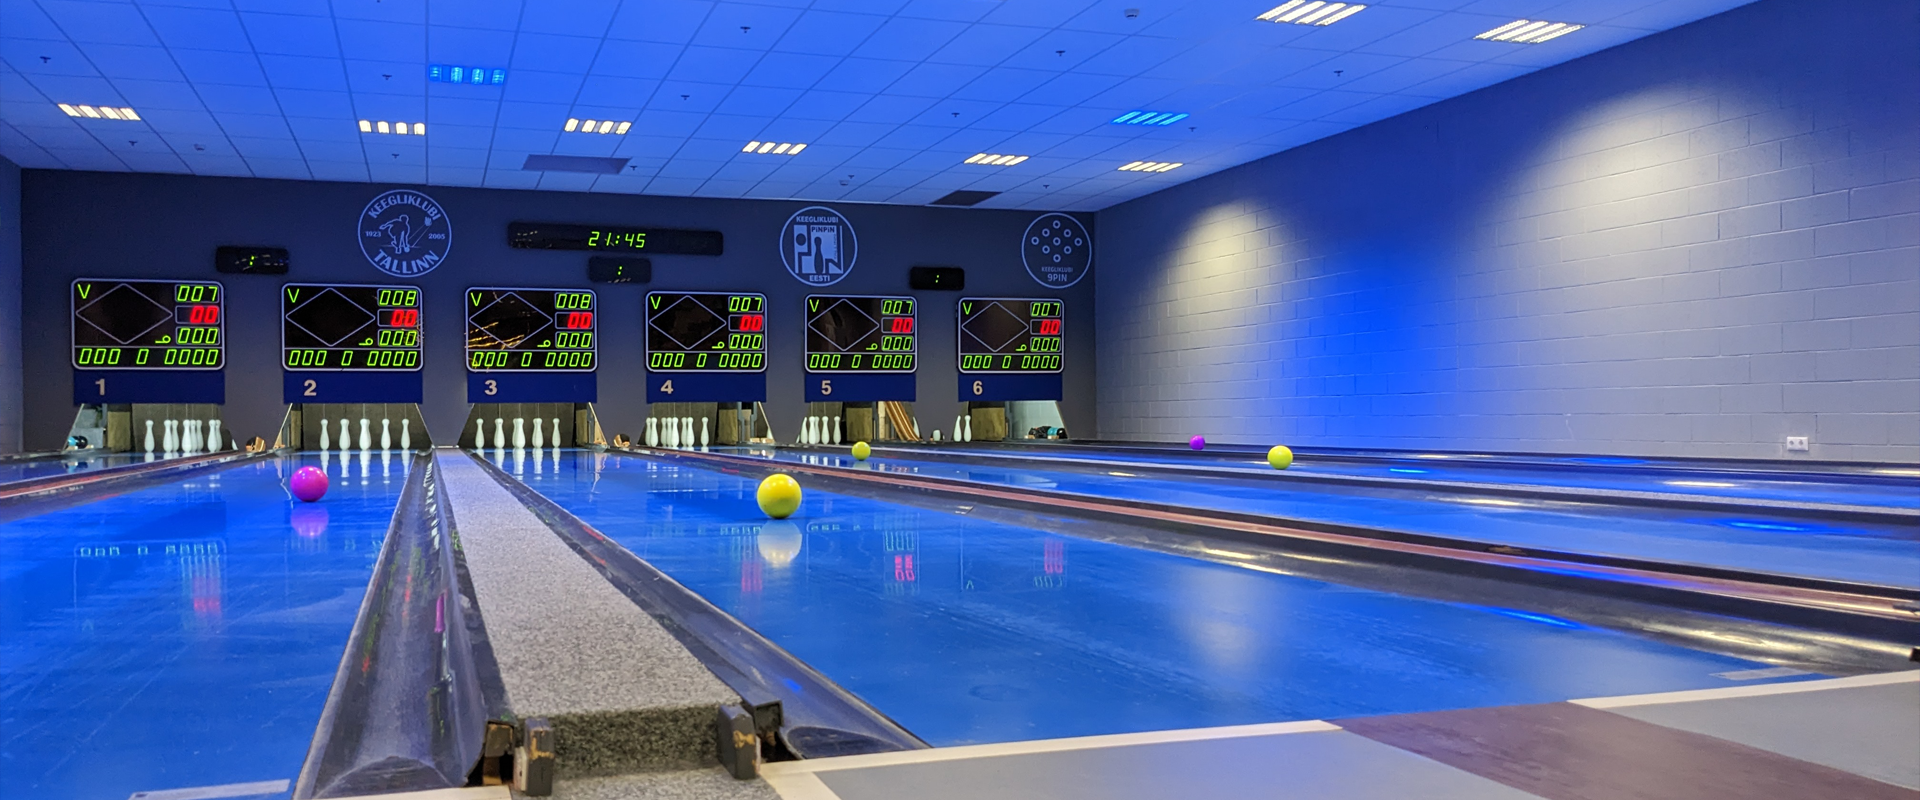 Nine-pin bowling lanes